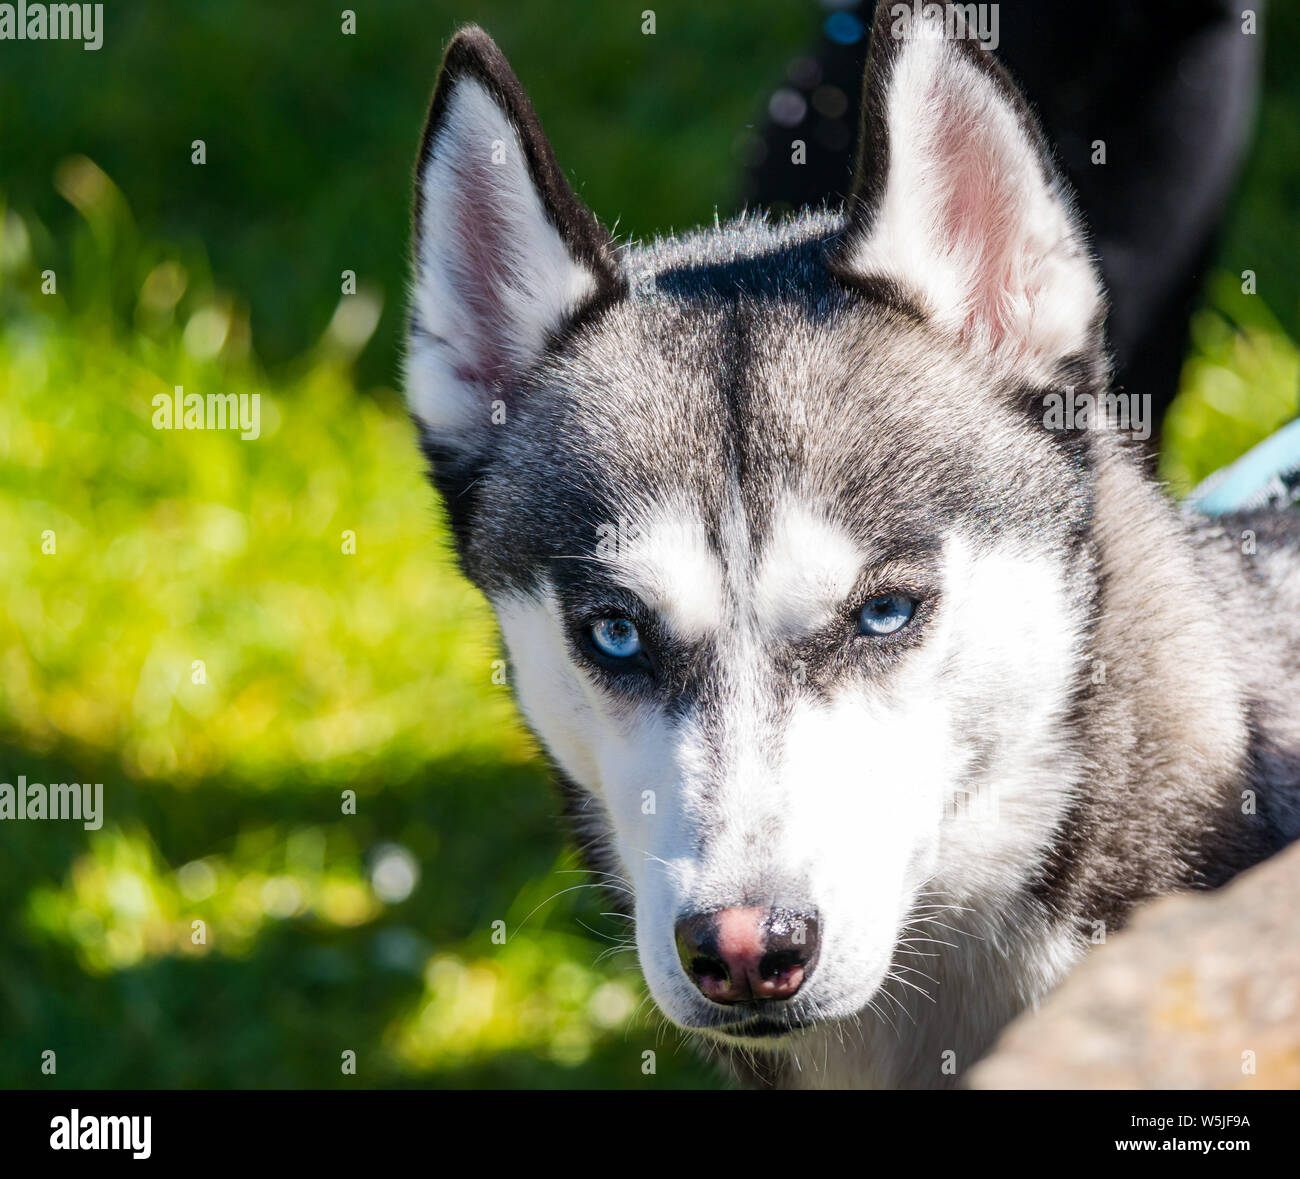 Aufsehenvoller bedrohlicher Look von sibirischem Husky-Hund mit leuchtend blauen Augen und spitzen, wachen Ohren Stockfoto